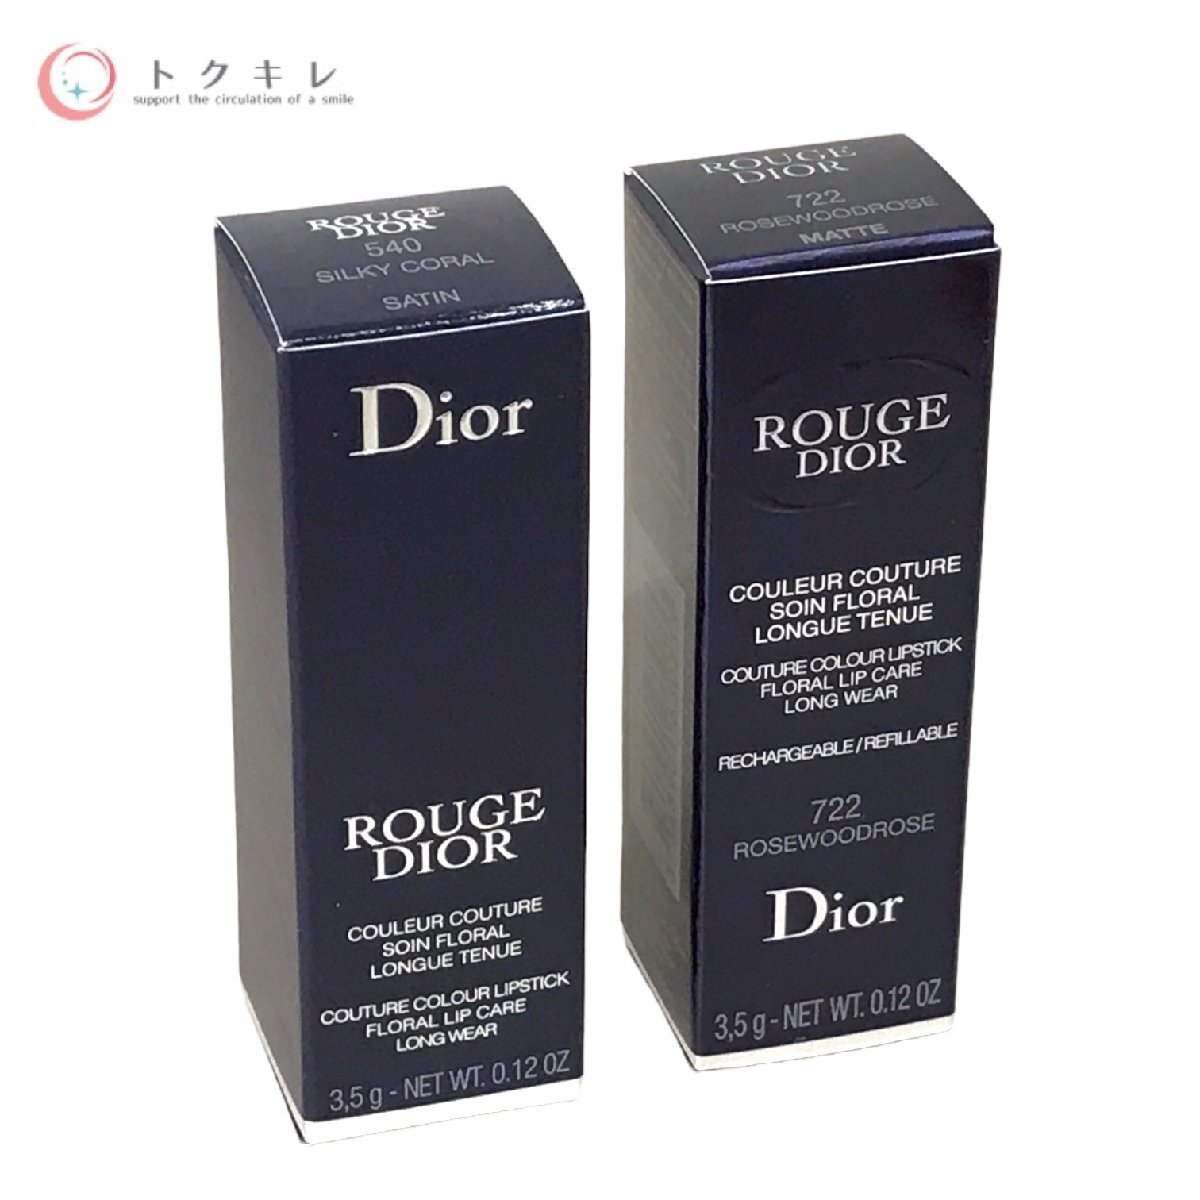 !1 иен старт бесплатная доставка cosme косметика много 22 позиций комплект Dior Dior -juSmi-le (s Mille ) очищающее масло тоник li Rize перепродажа .